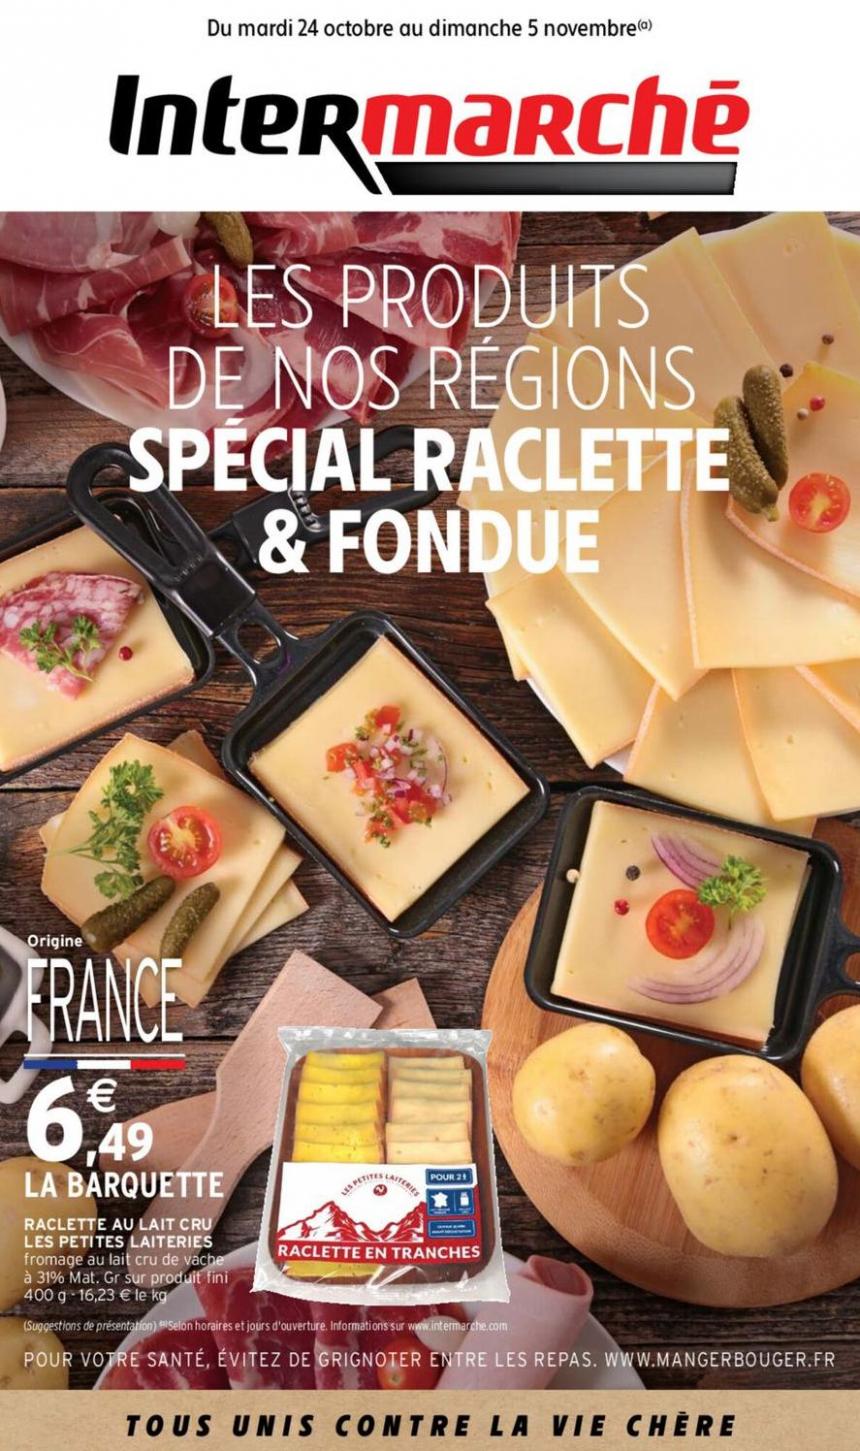 Les Produits De Nos Regions Special Raclette & Fondue. Intermarché Contact (2023-11-05-2023-11-05)